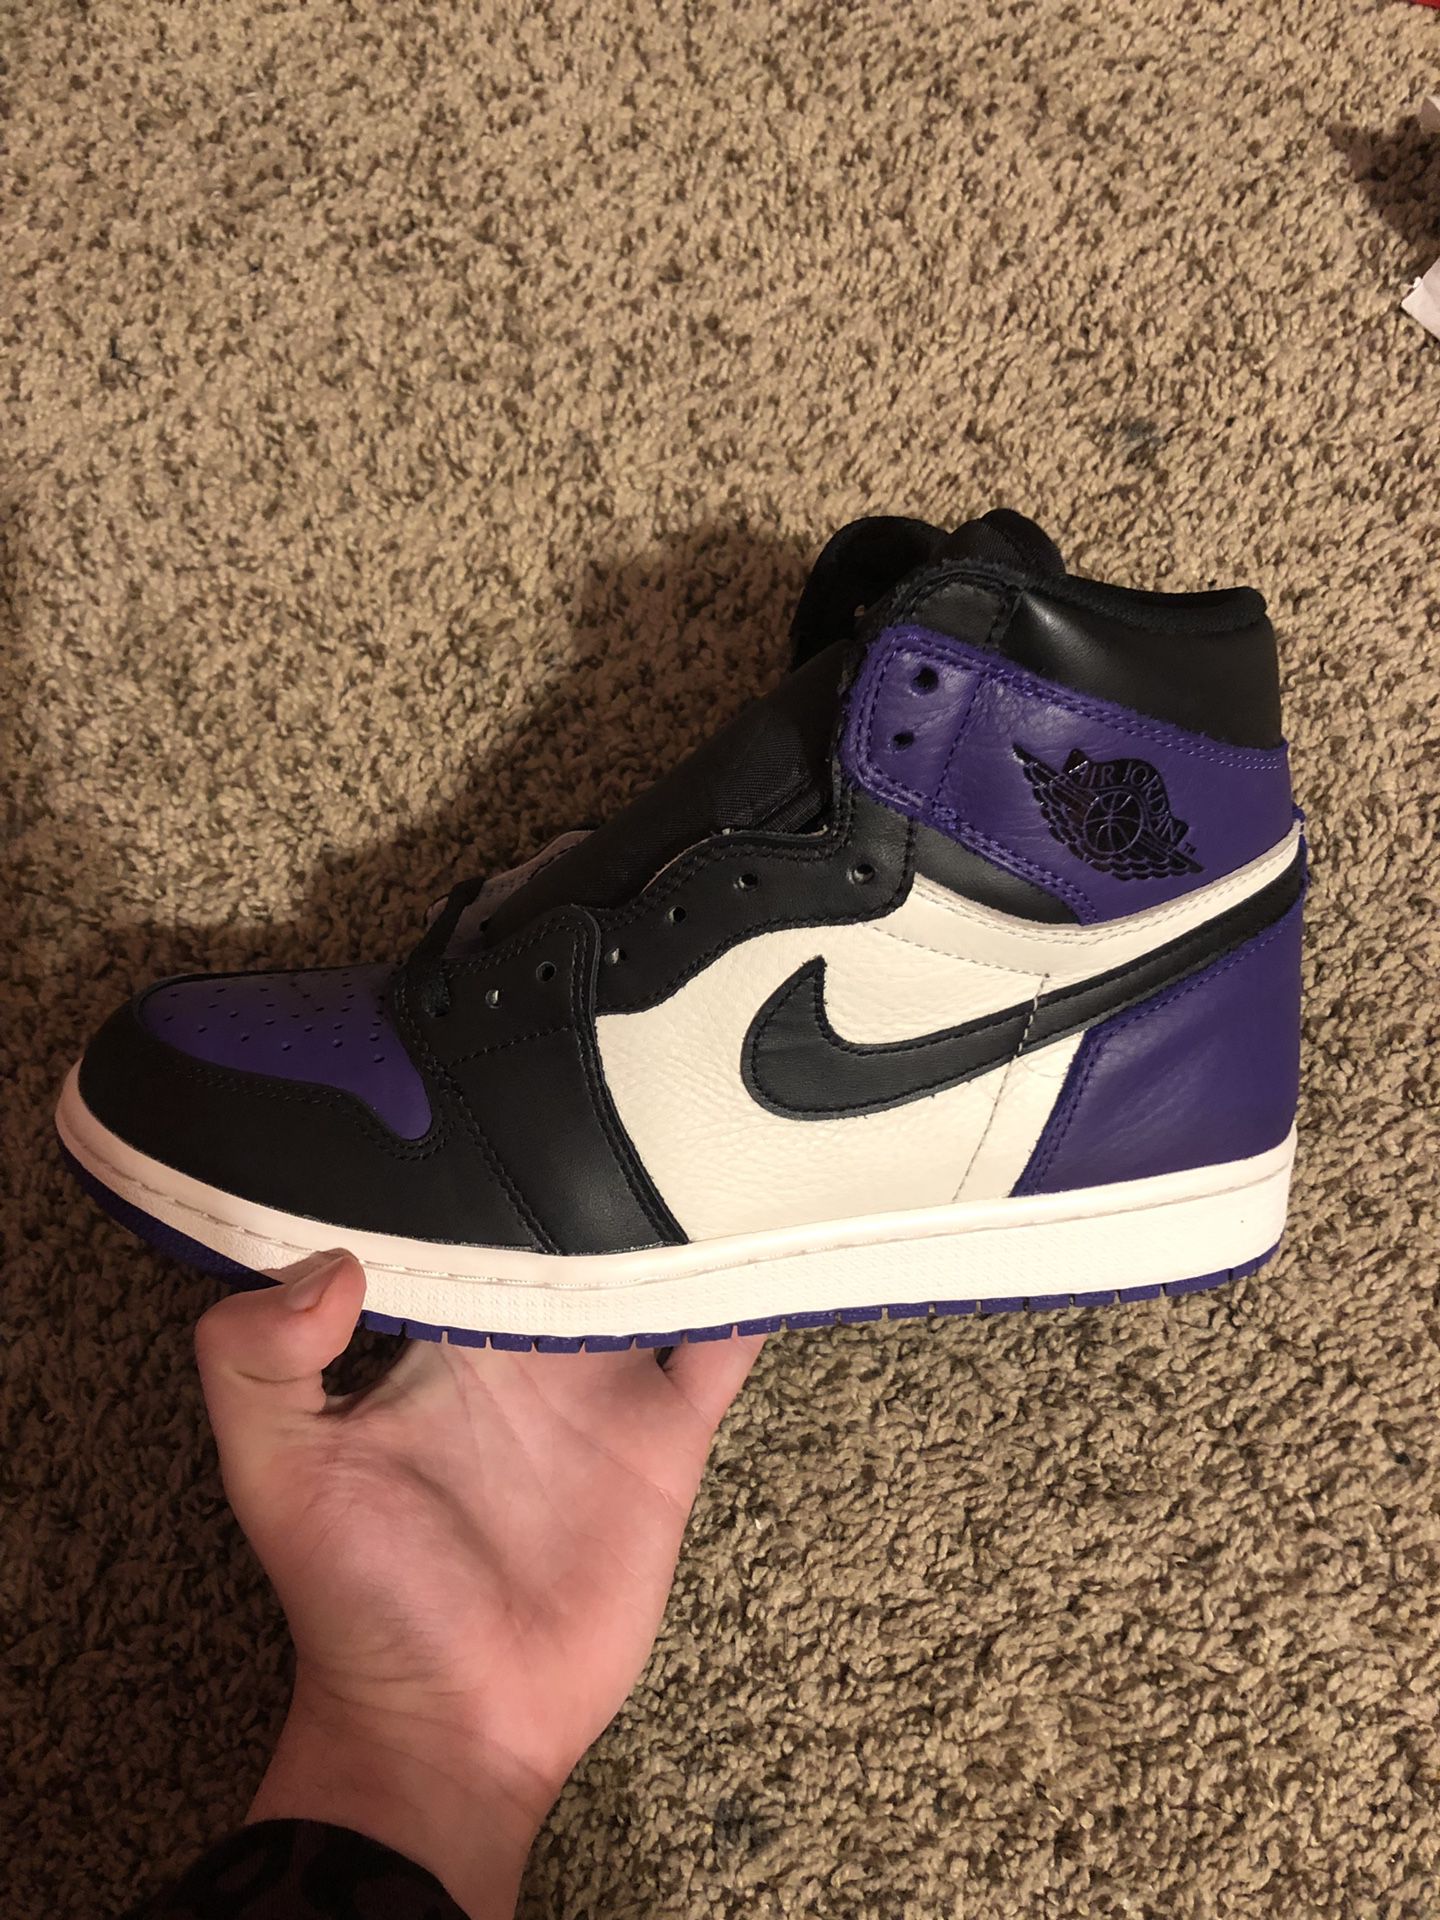 Jordan 1 court purples size 10